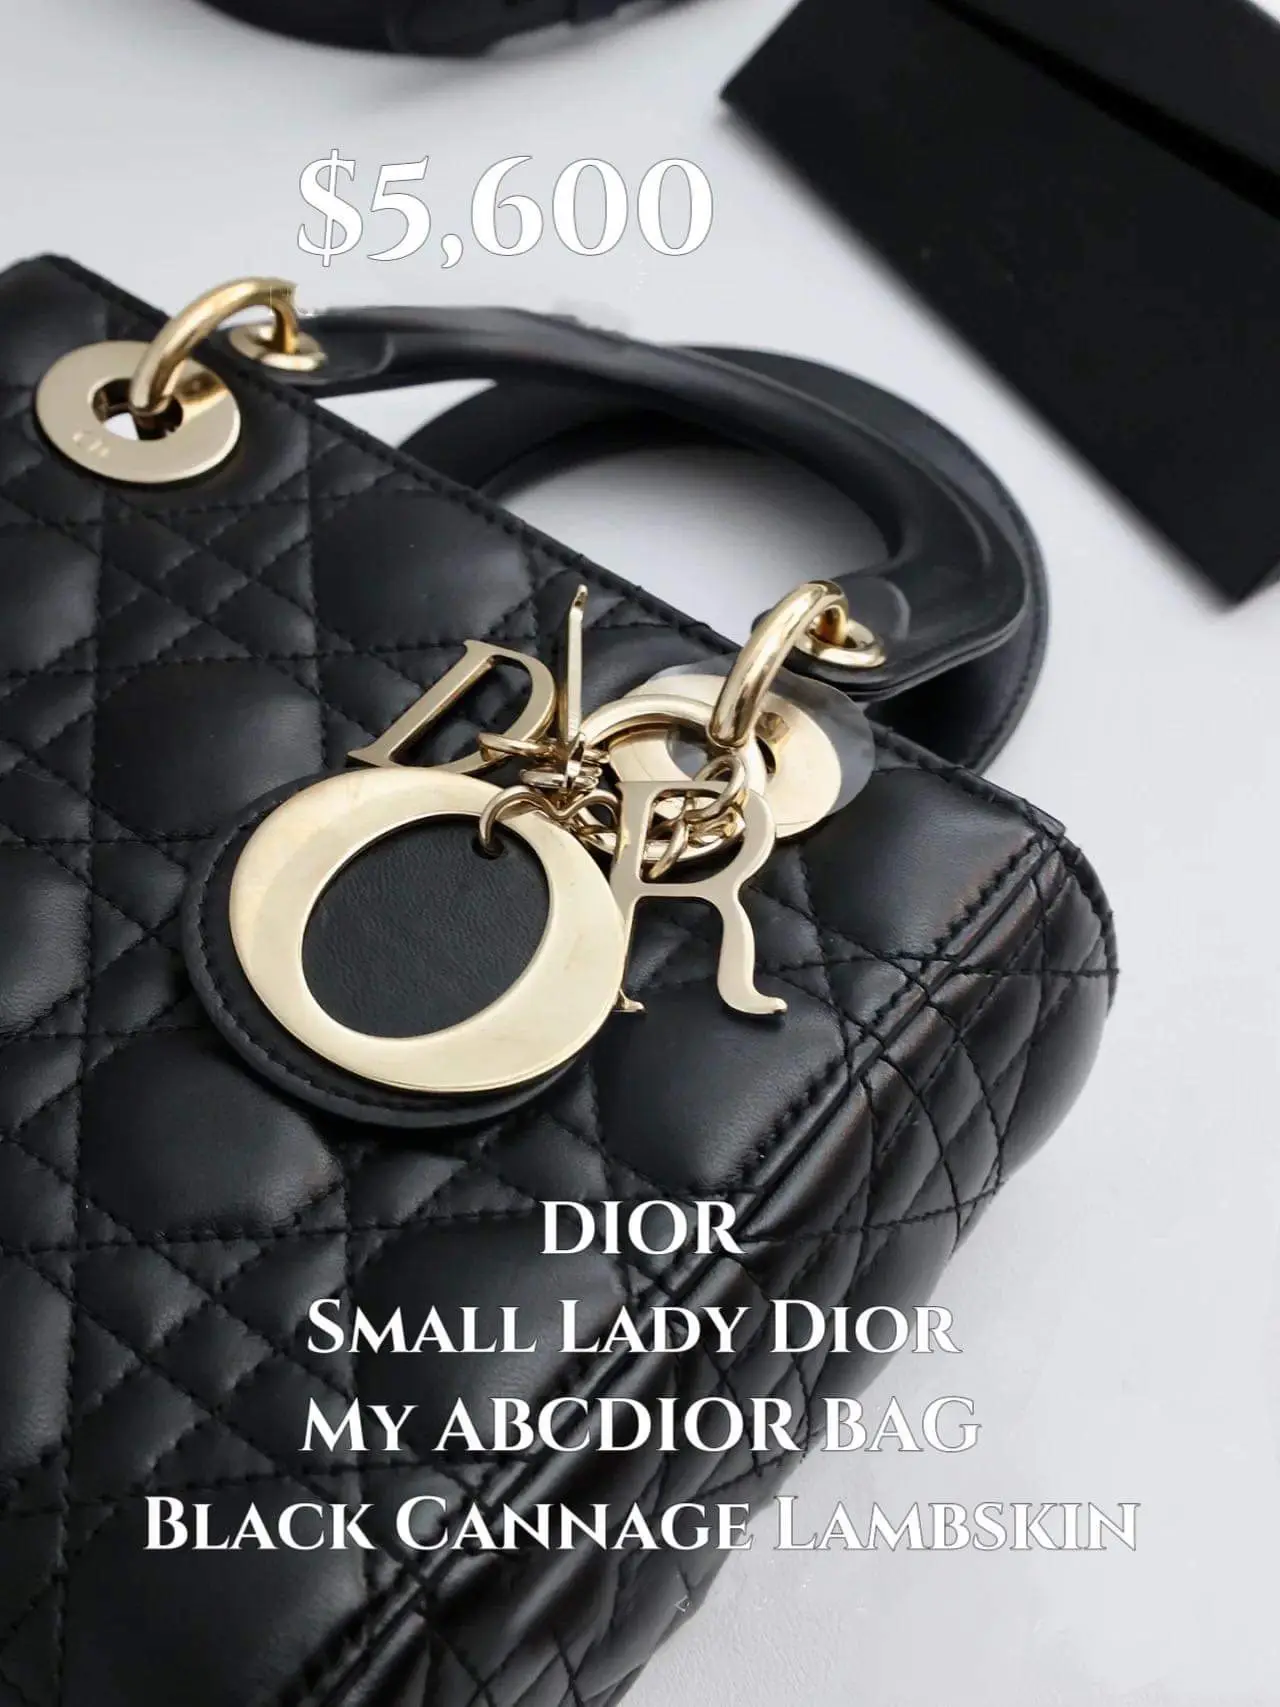 Small Lady Dior My ABCDior Bag Powder Beige Cannage Lambskin